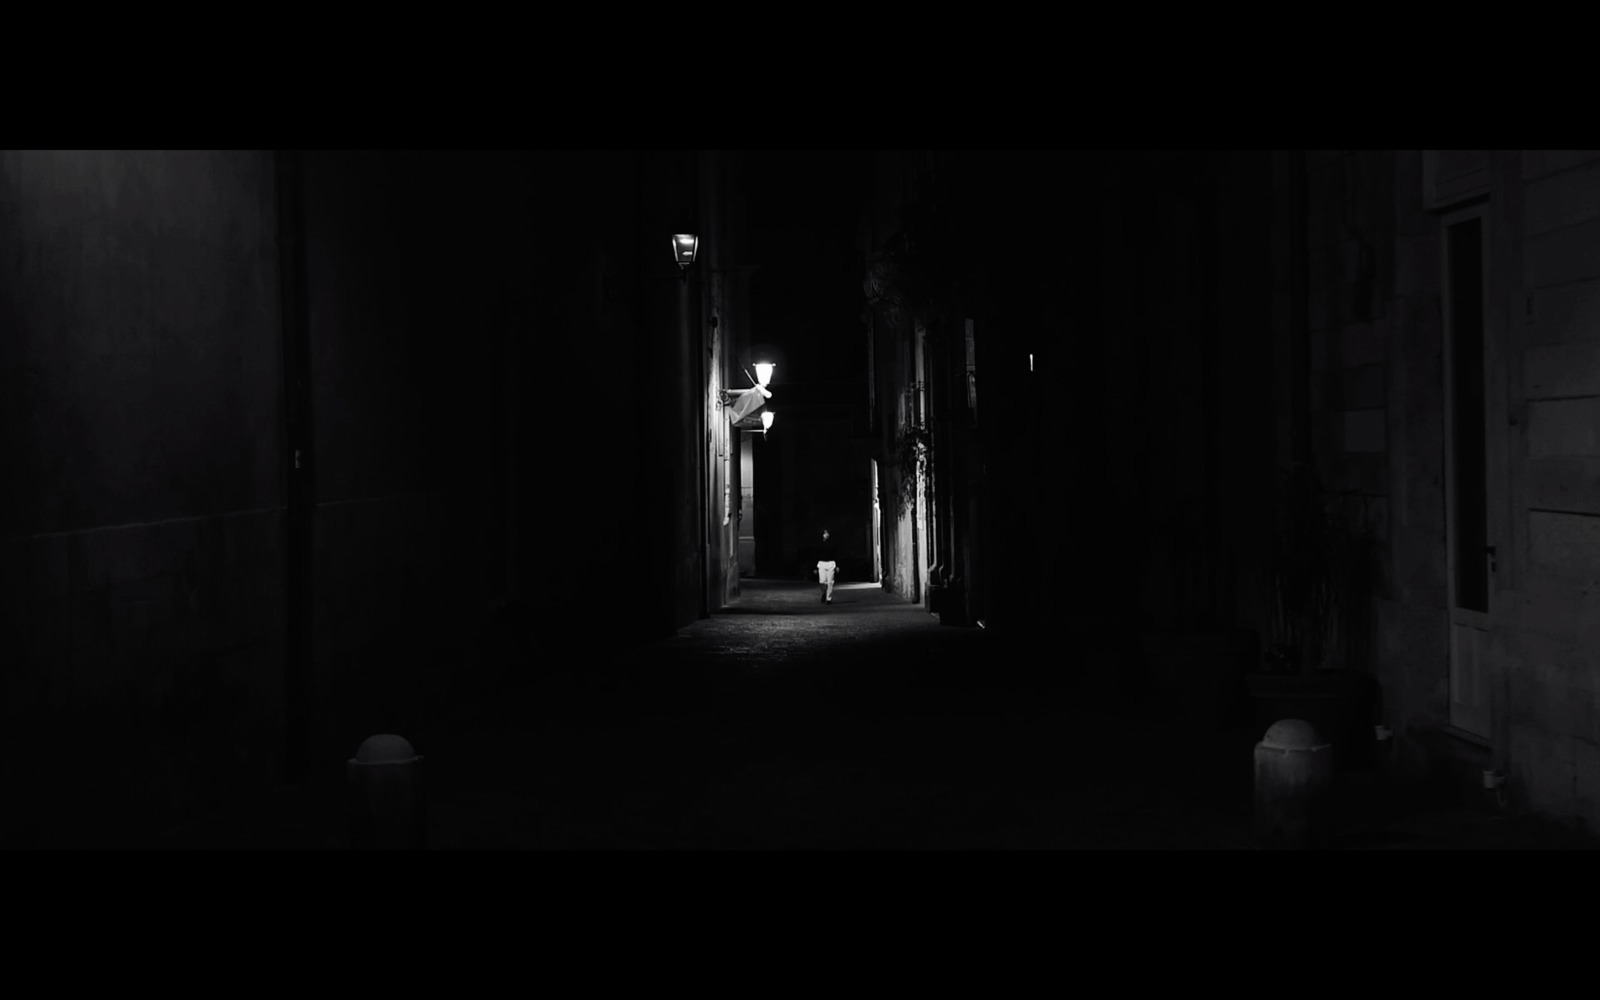 Aspetto l'alba, a short film with Raffaele's music